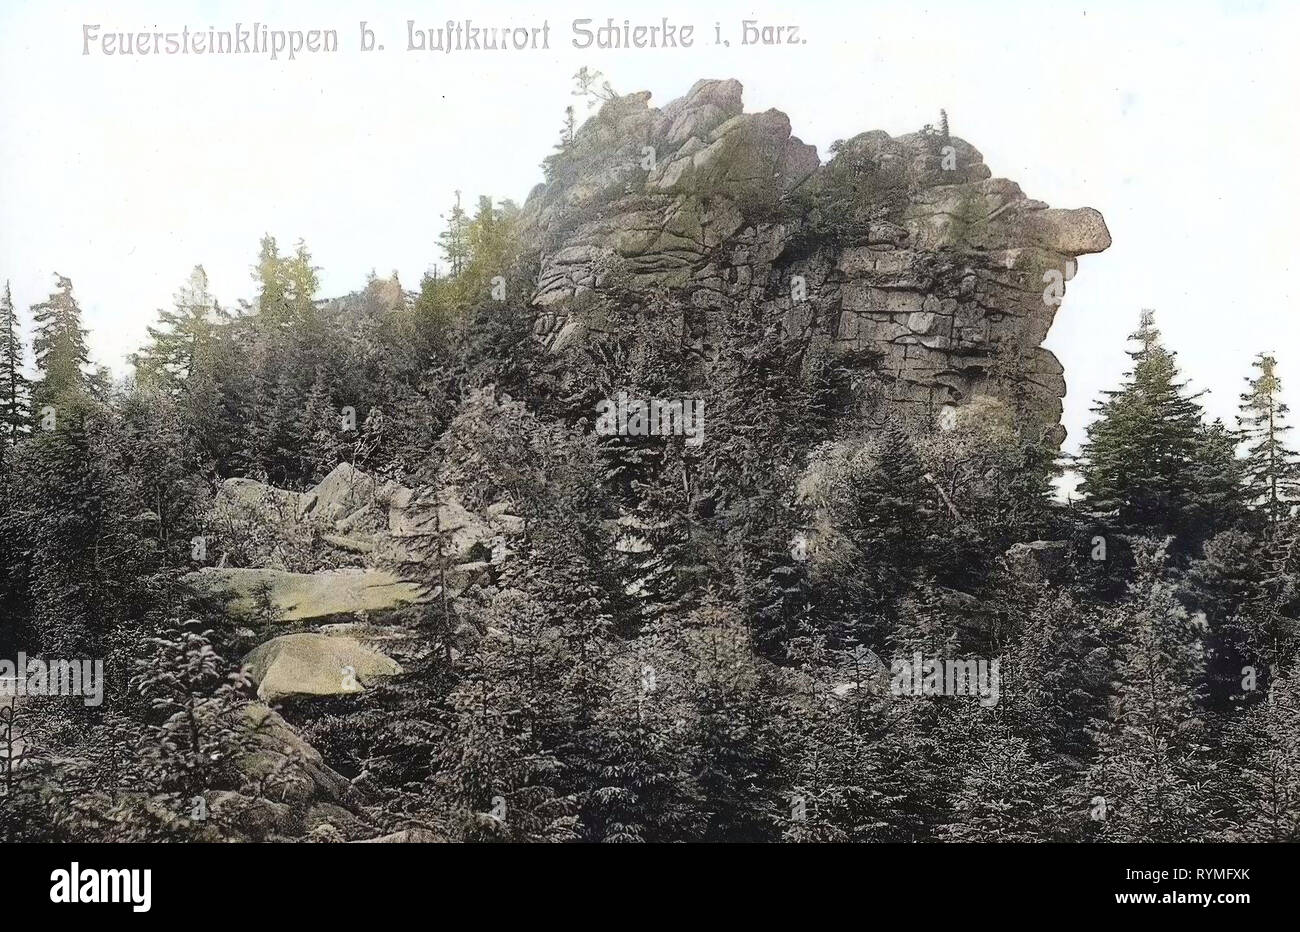 Feuersteinklippe, Spheroidal weathering, 1907, Saxony-Anhalt, Schierke, Feuersteinklippen, Germany Stock Photo